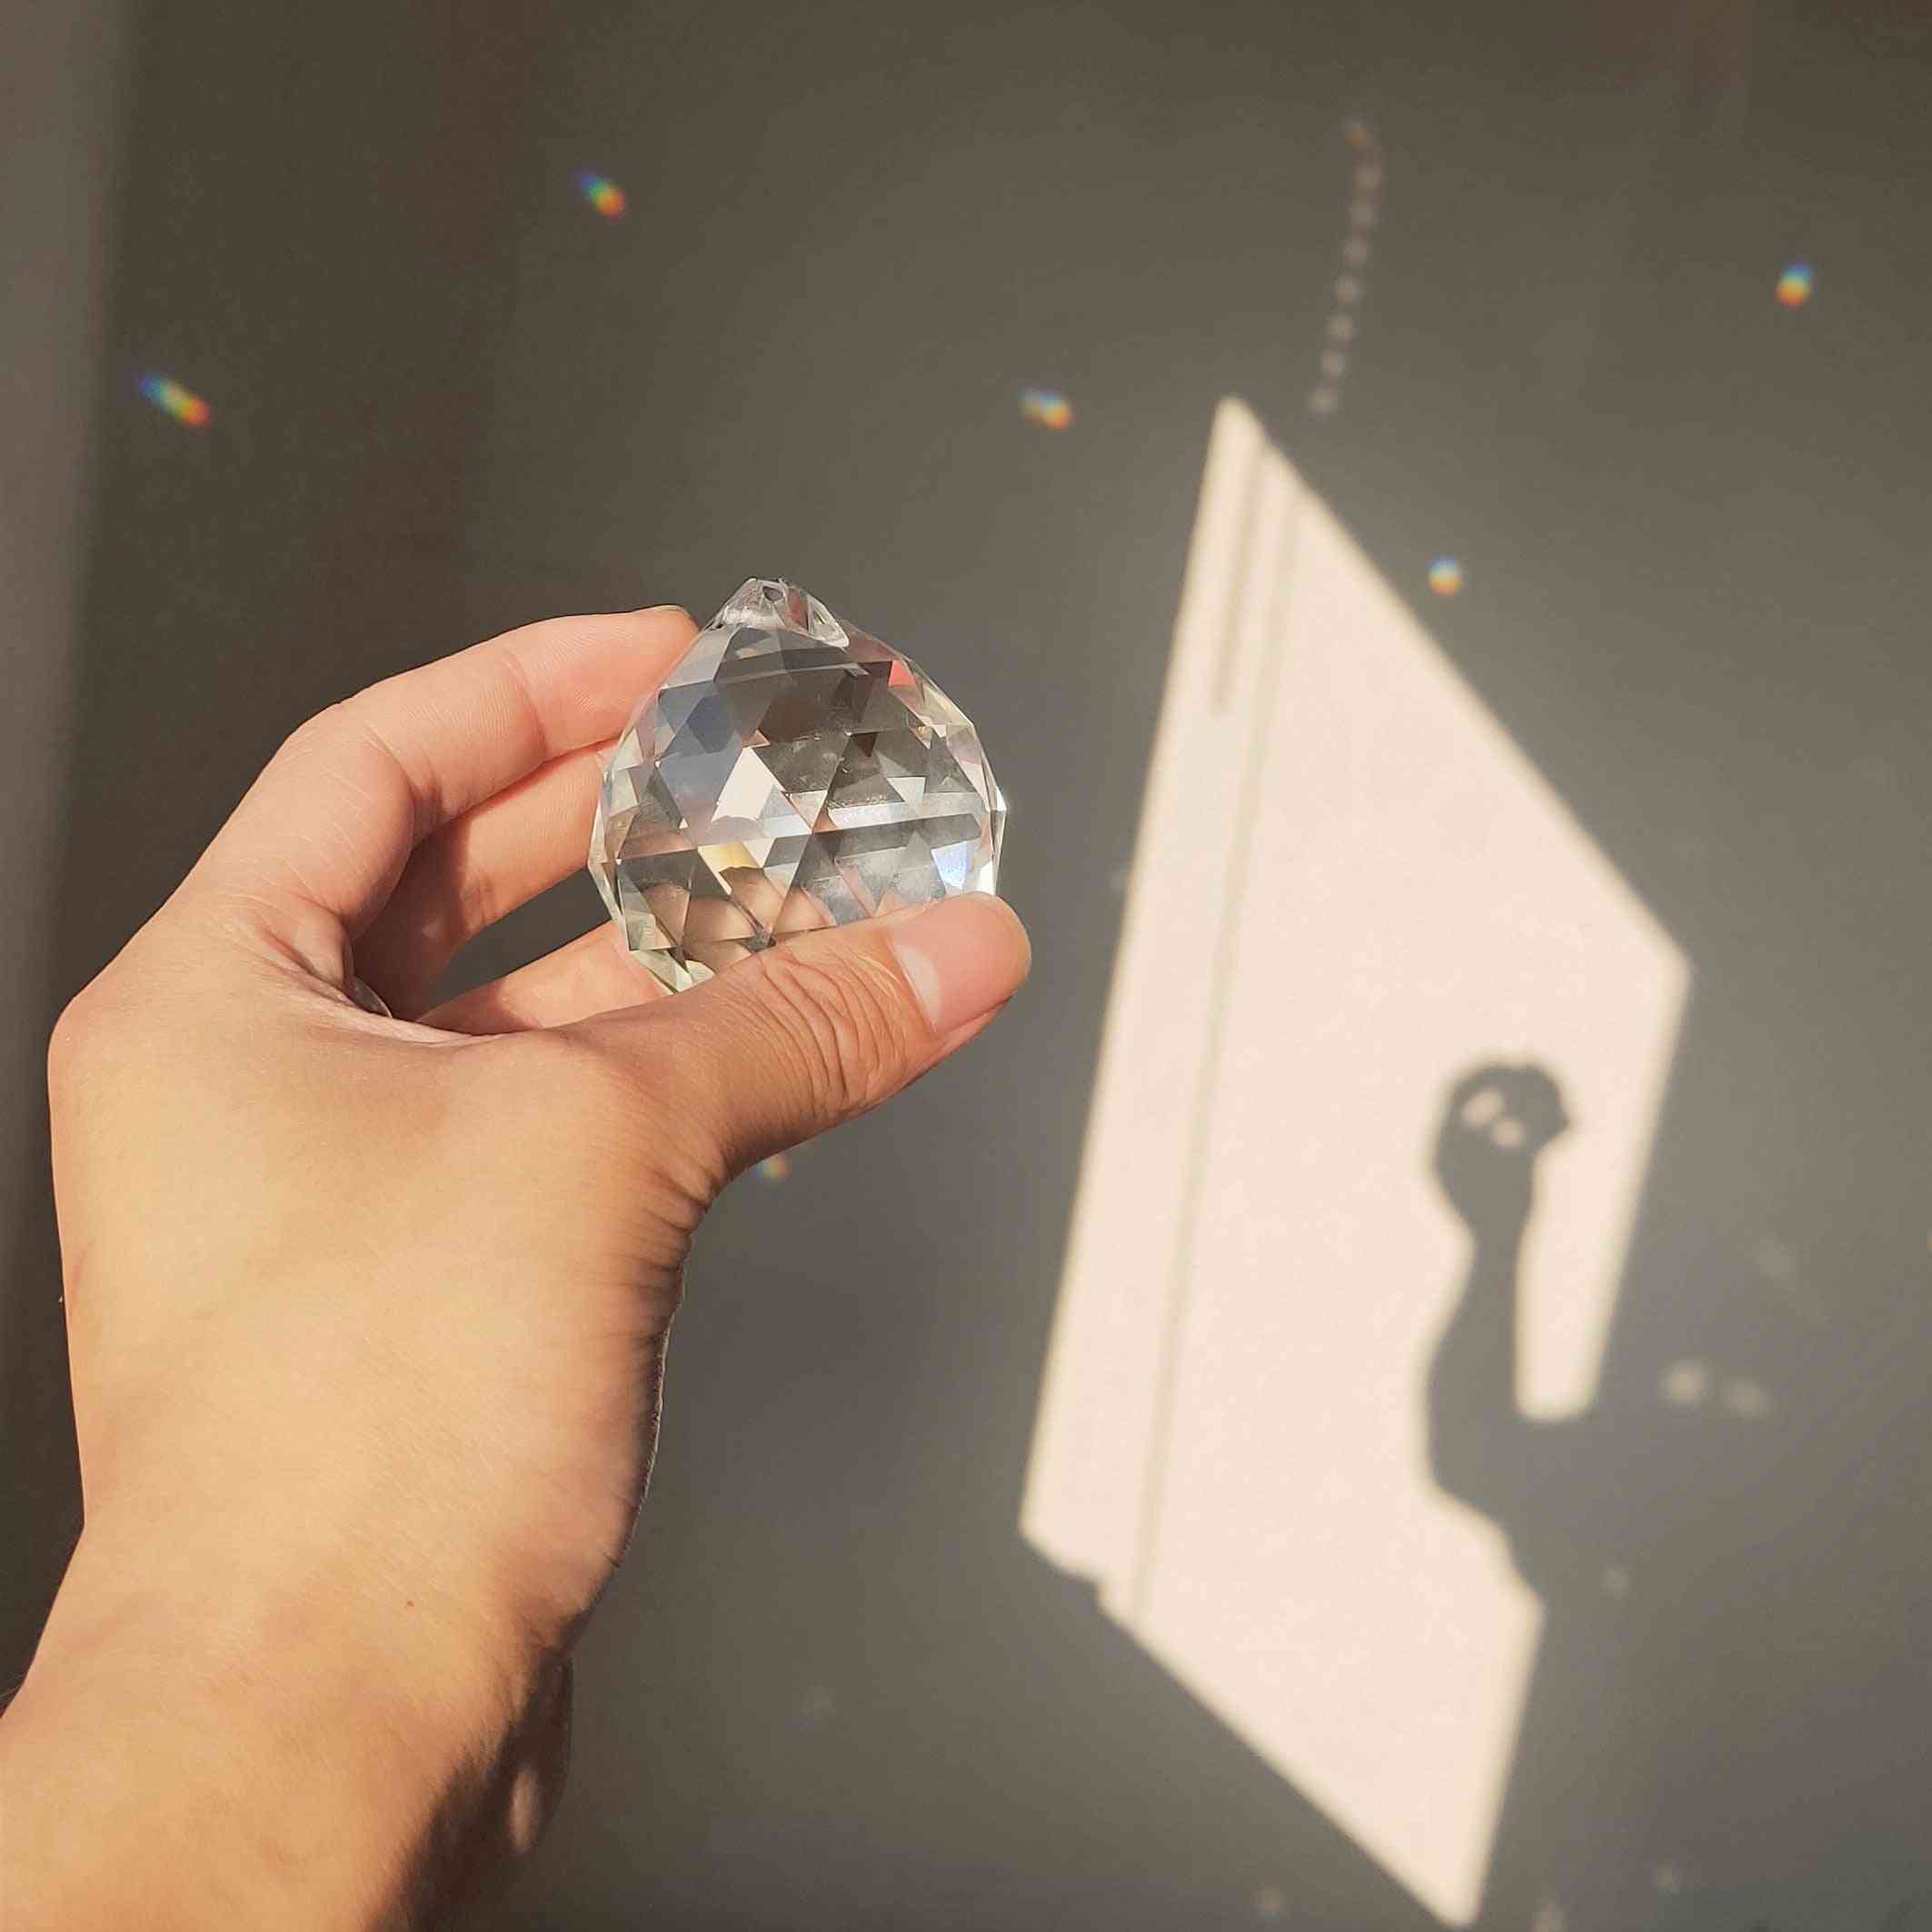 50mm feng shui pendurado prisma de esfera de cristal para pingente suncatcher arco-íris